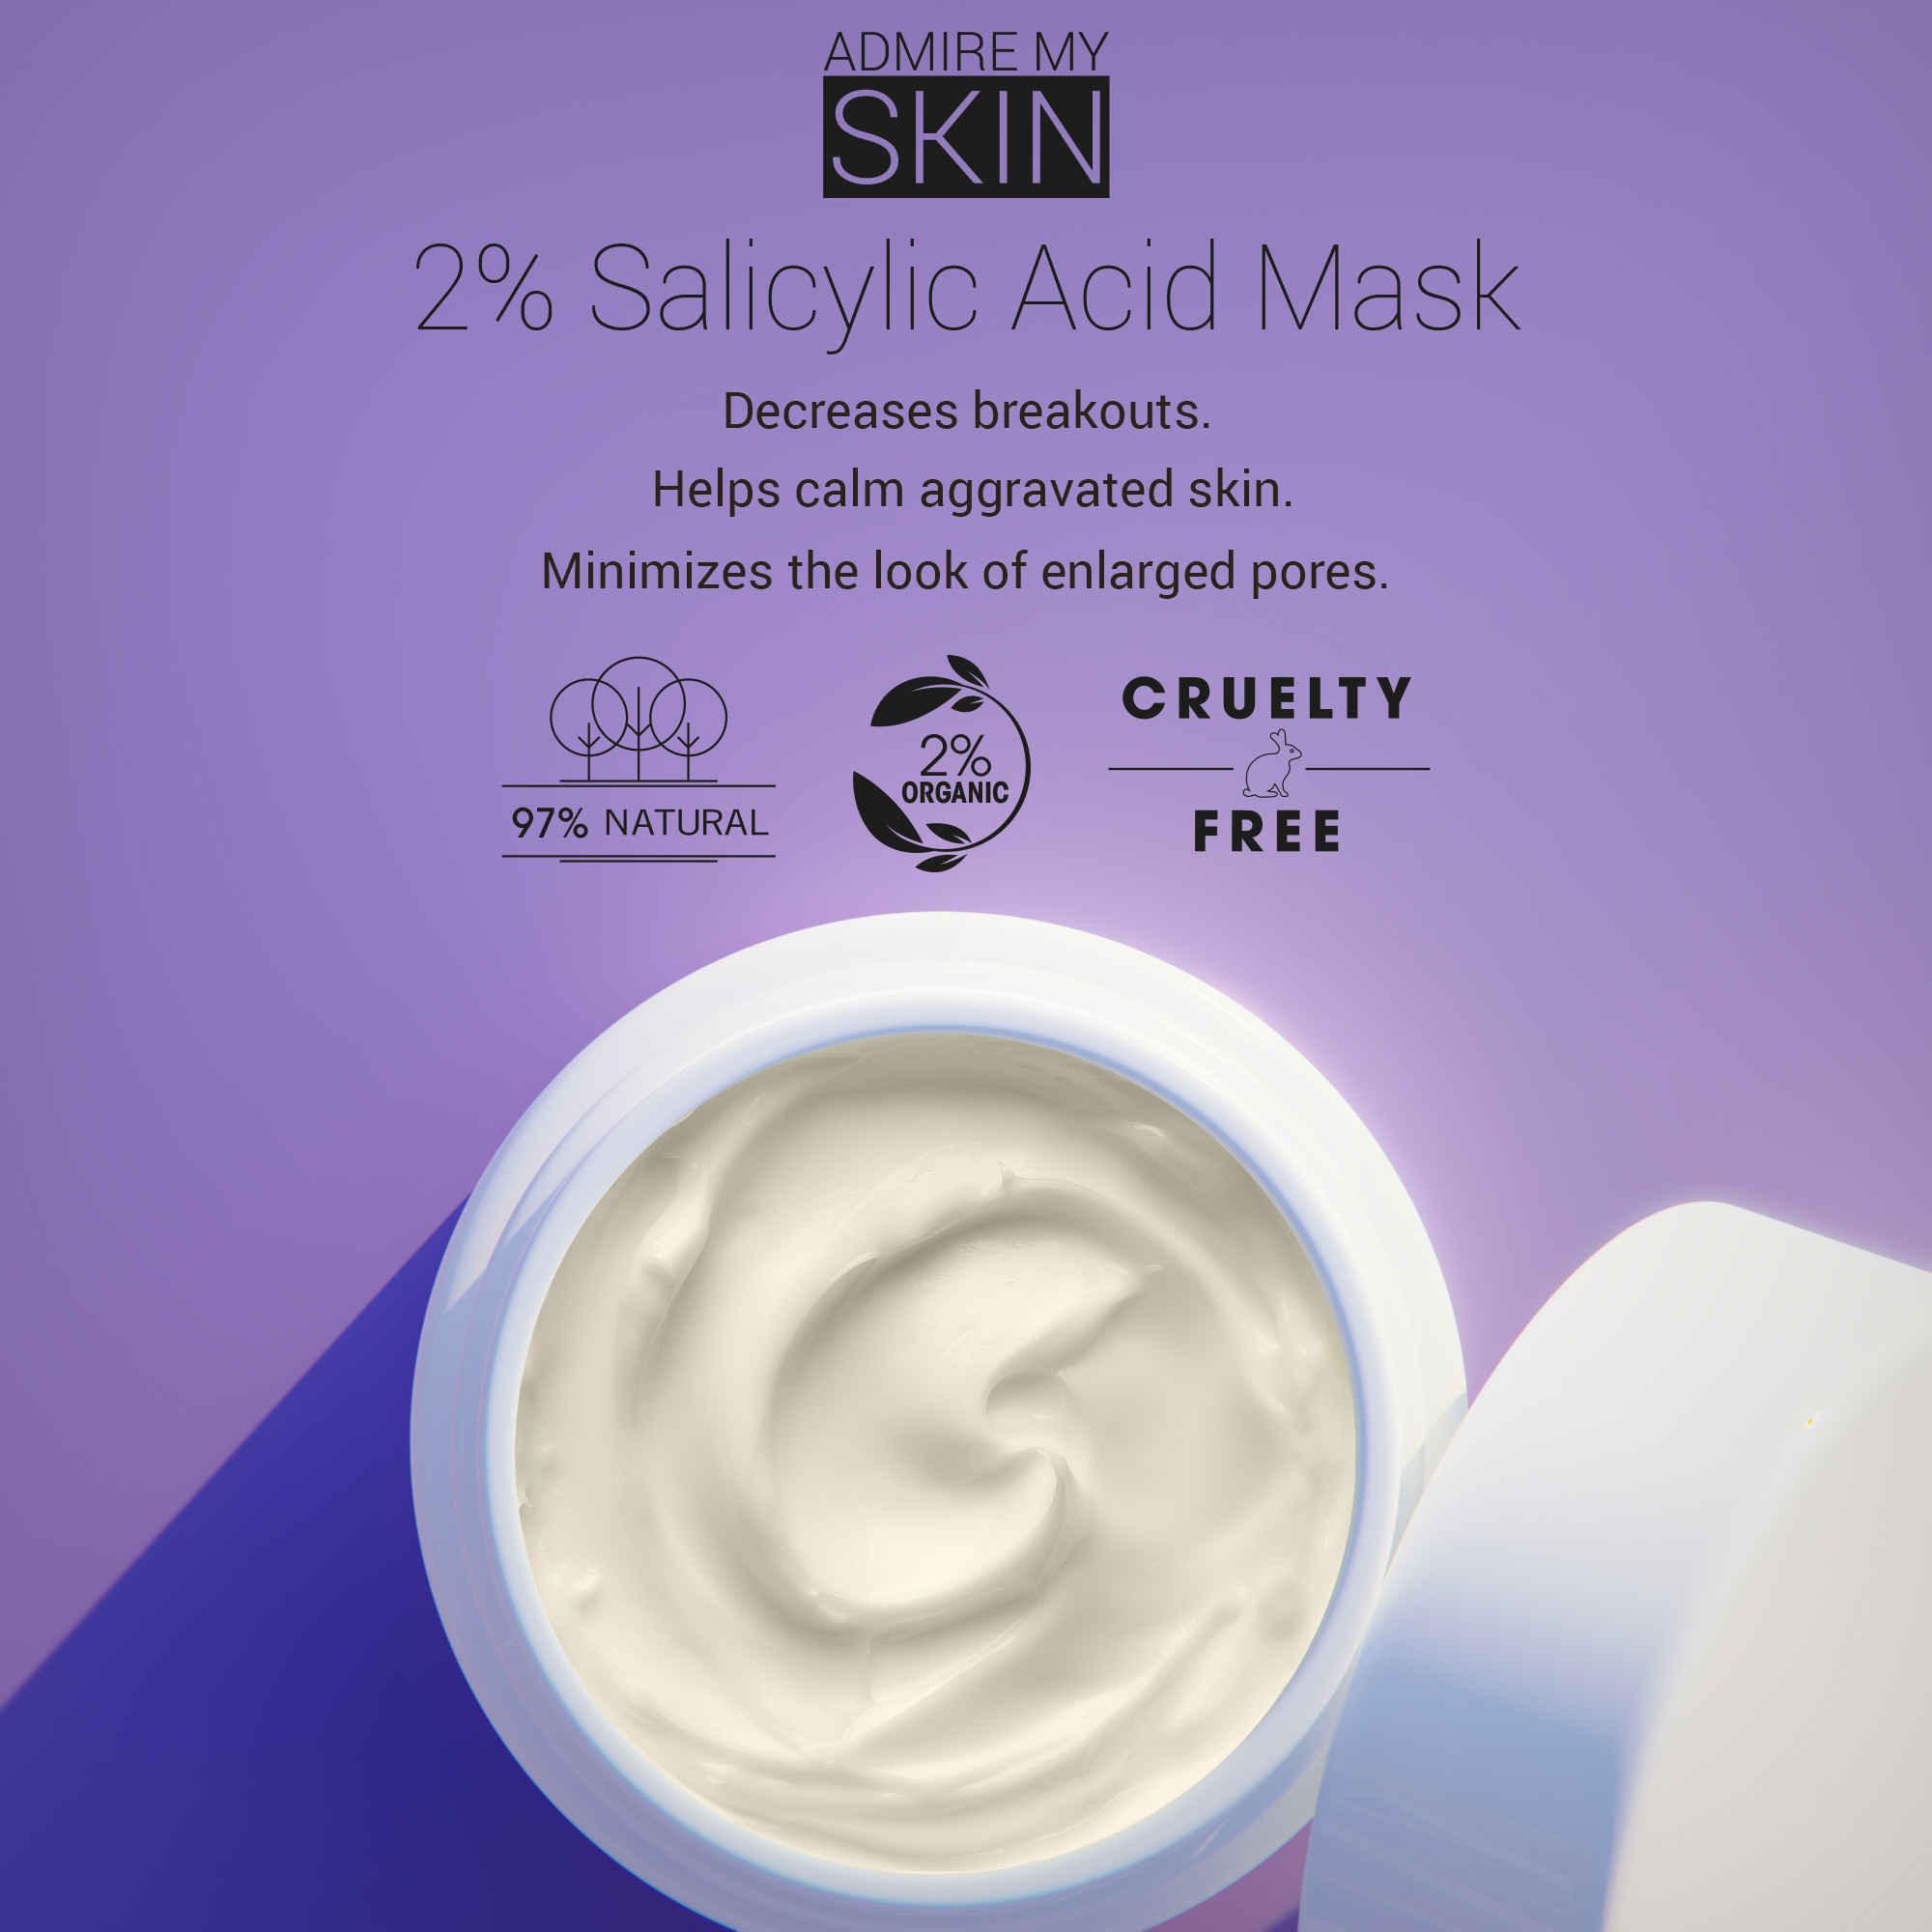 2 % Salicylsäure-Gesichtsmaske gegen Akne – bewundere meine Haut